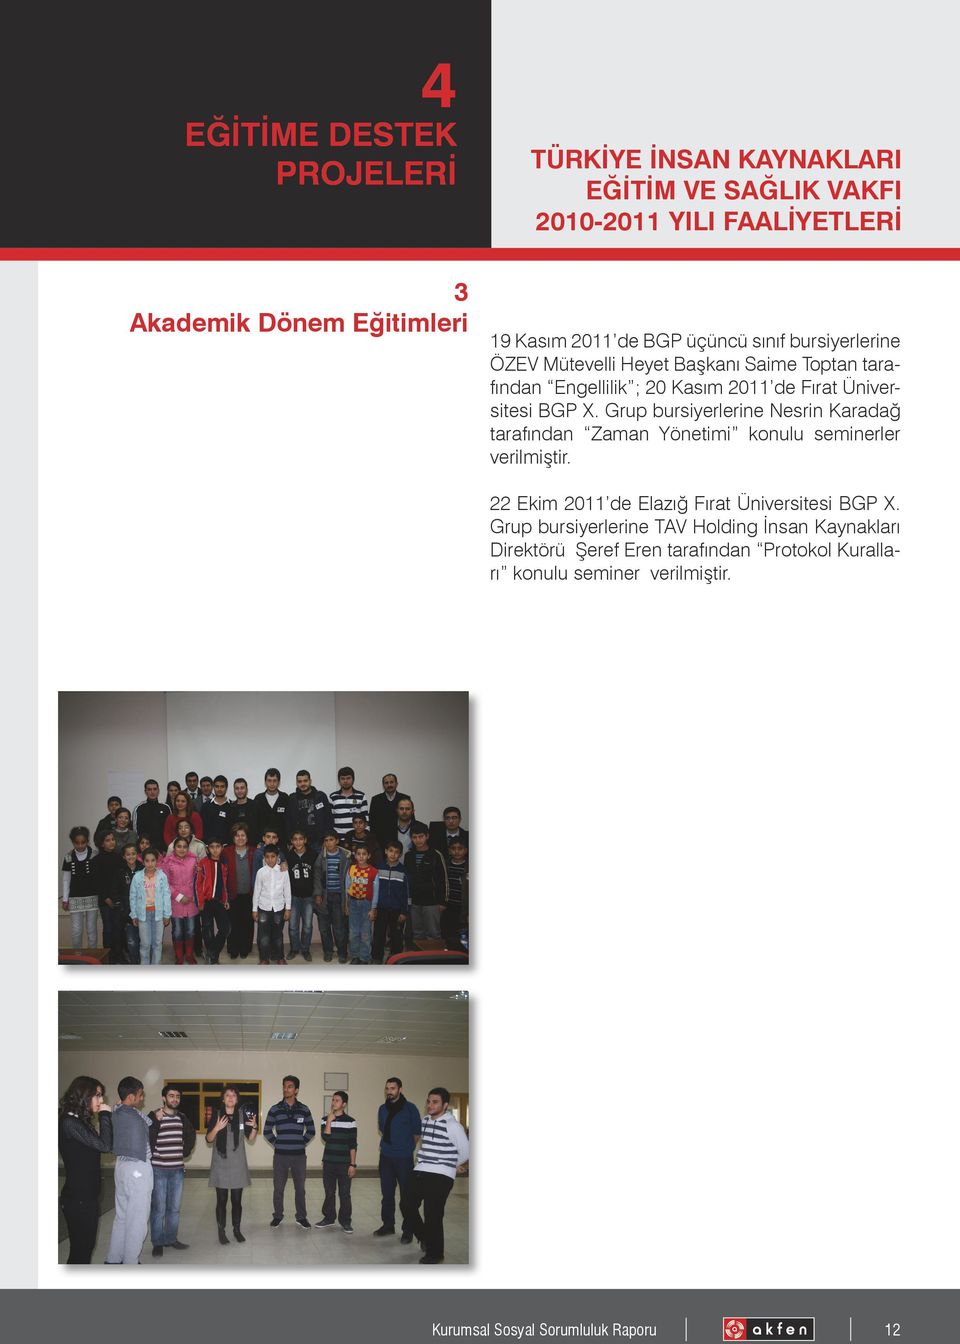 Grup bursiyerlerine Nesrin Karadağ tarafından Zaman Yönetimi konulu seminerler verilmiştir. 22 Ekim 2011 de Elazığ Fırat Üniversitesi BGP X.